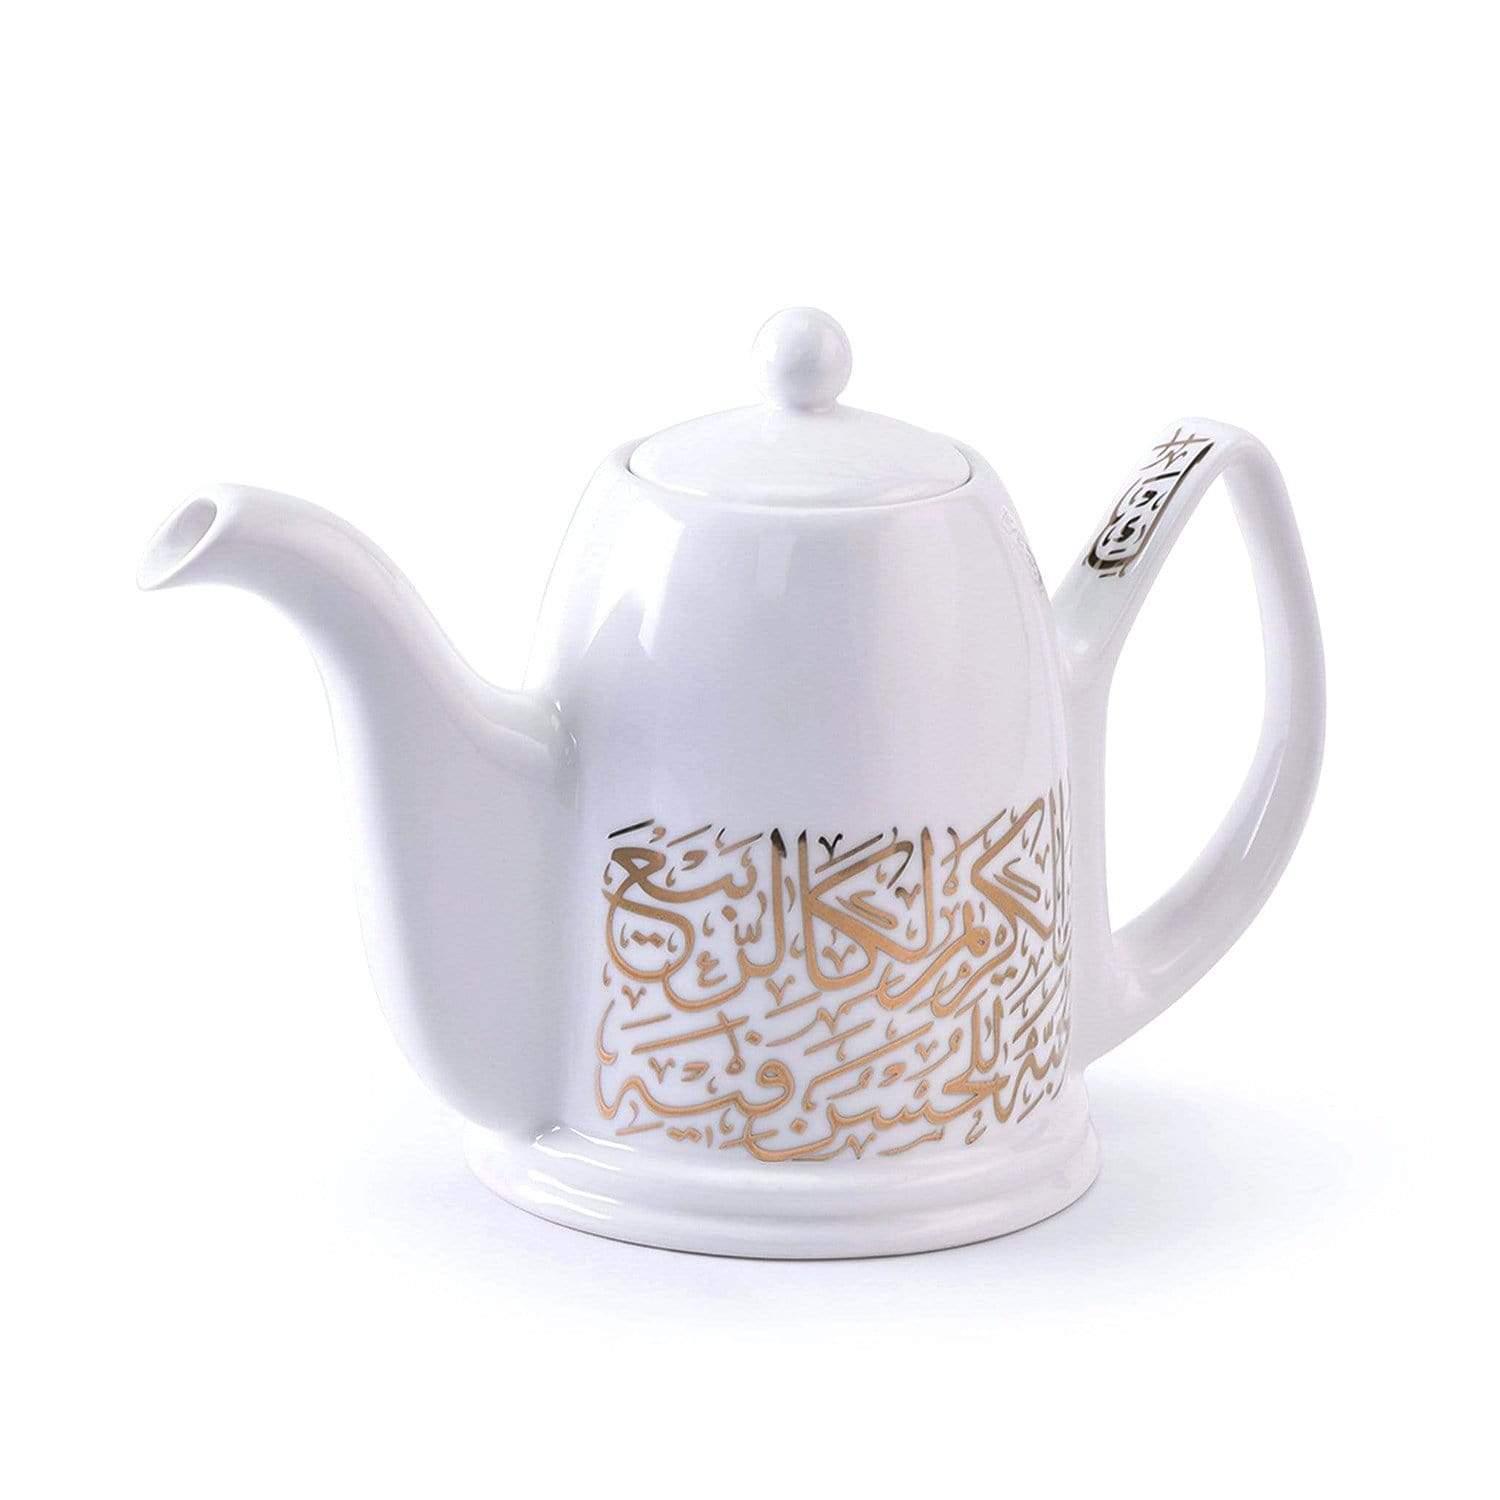 Dimlaj Kareem Tea Pot Set with Lid - White and Gold, 2 Pieces - 46667